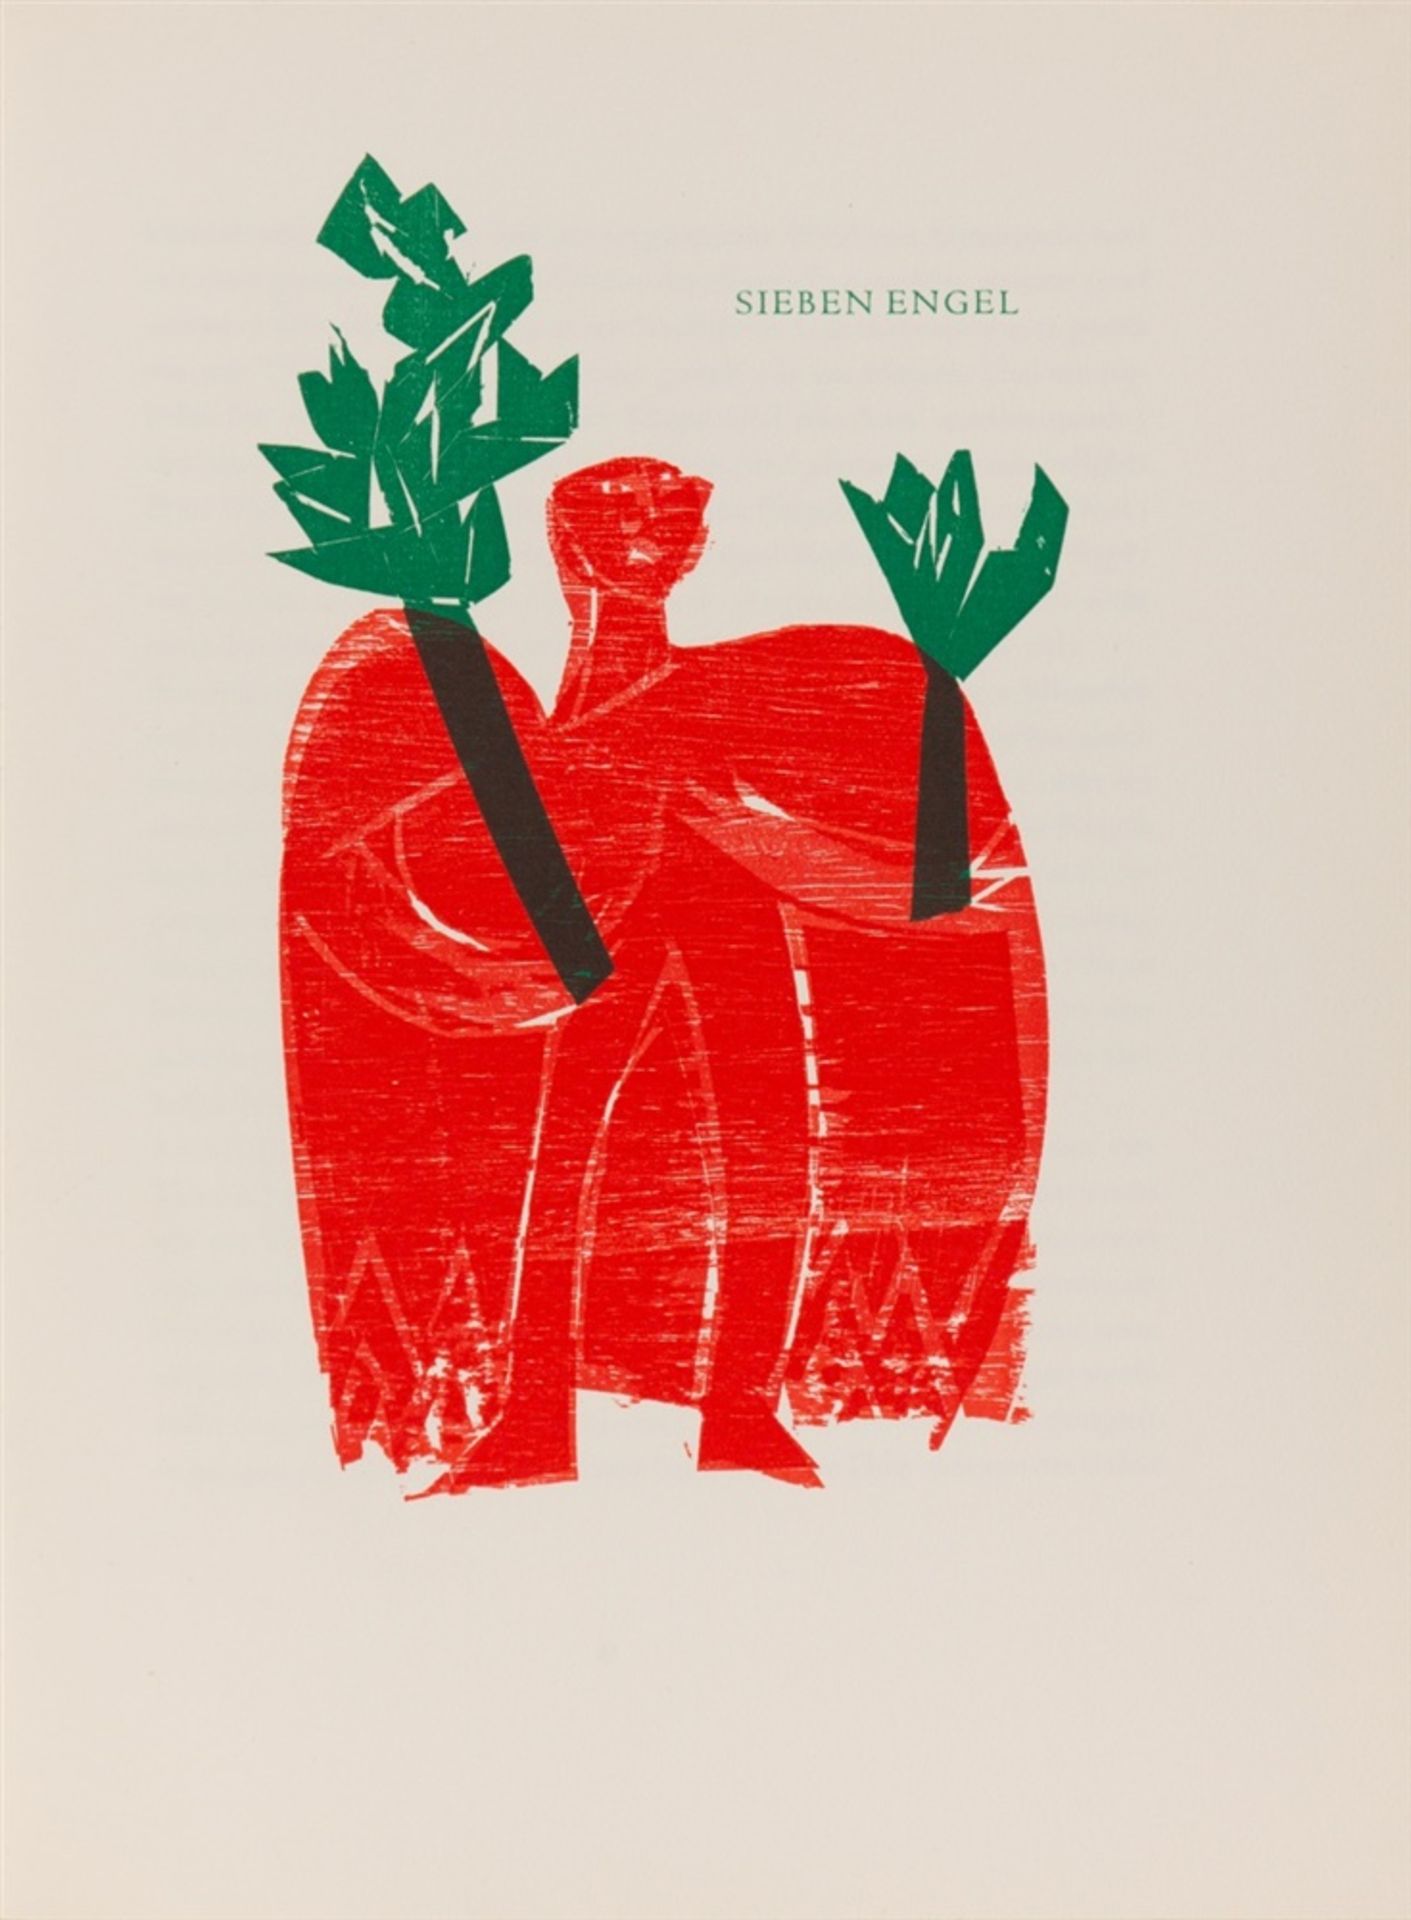 GRIESHABER HAPSieben Engel. Nachwort von Margot Fürst. Stuttgart: Manus Presse 1962. 32 x 24. cm.